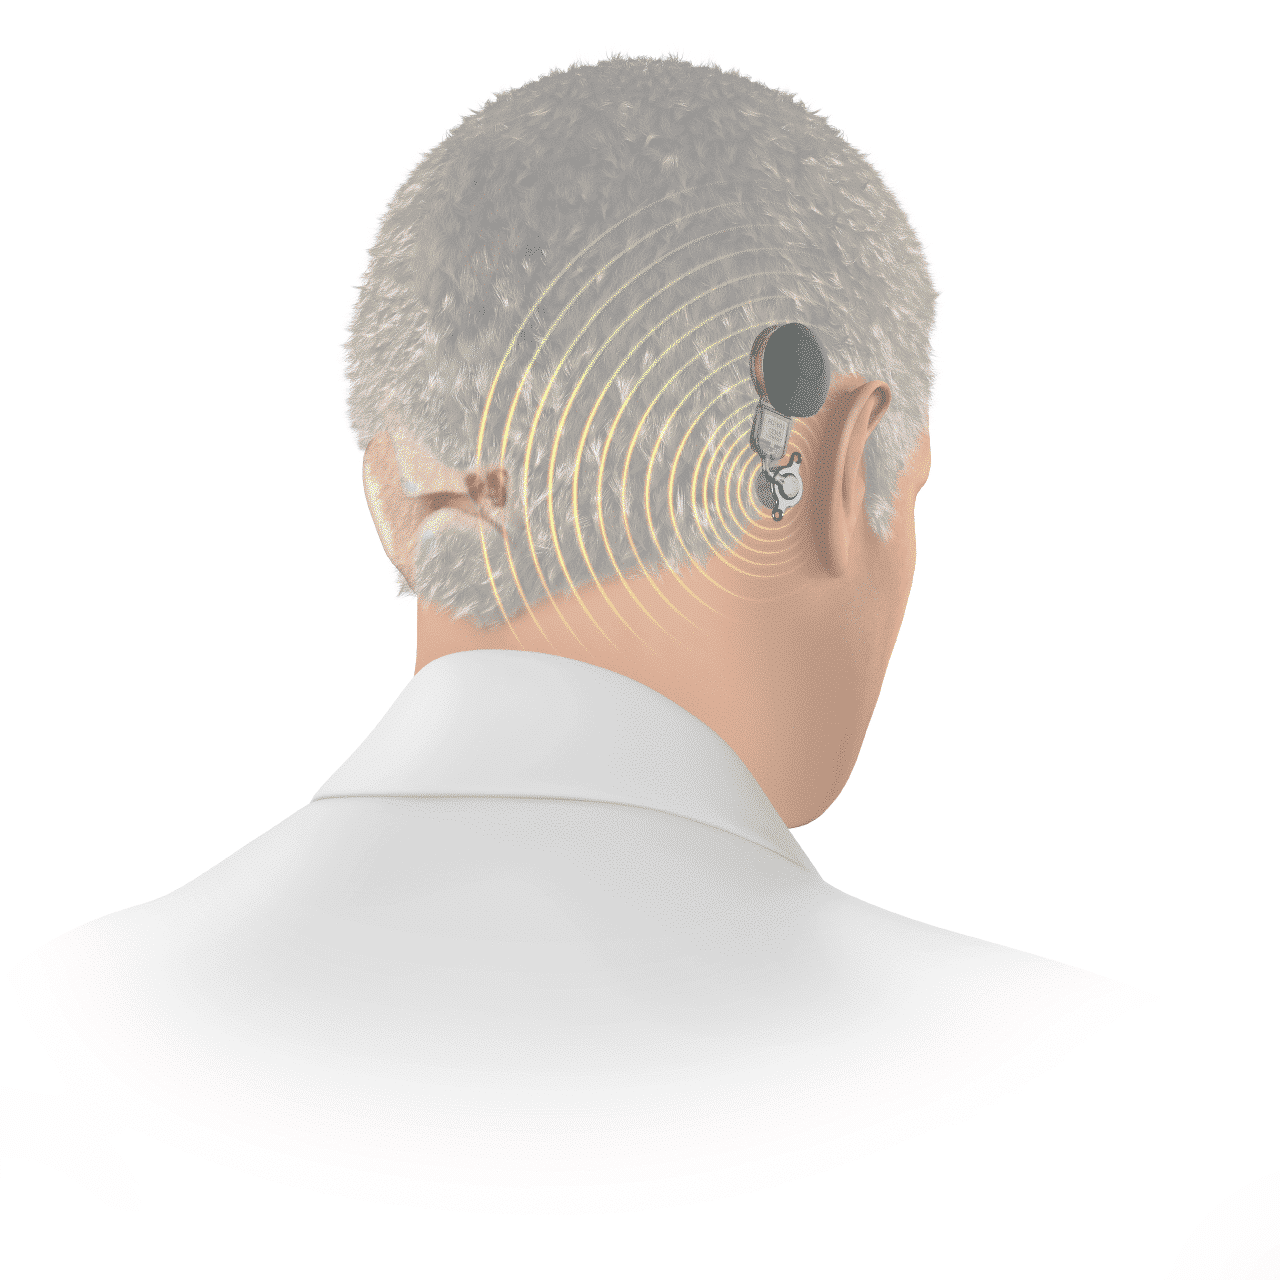 Las 5 mejores empresas de audífonos para sordos 